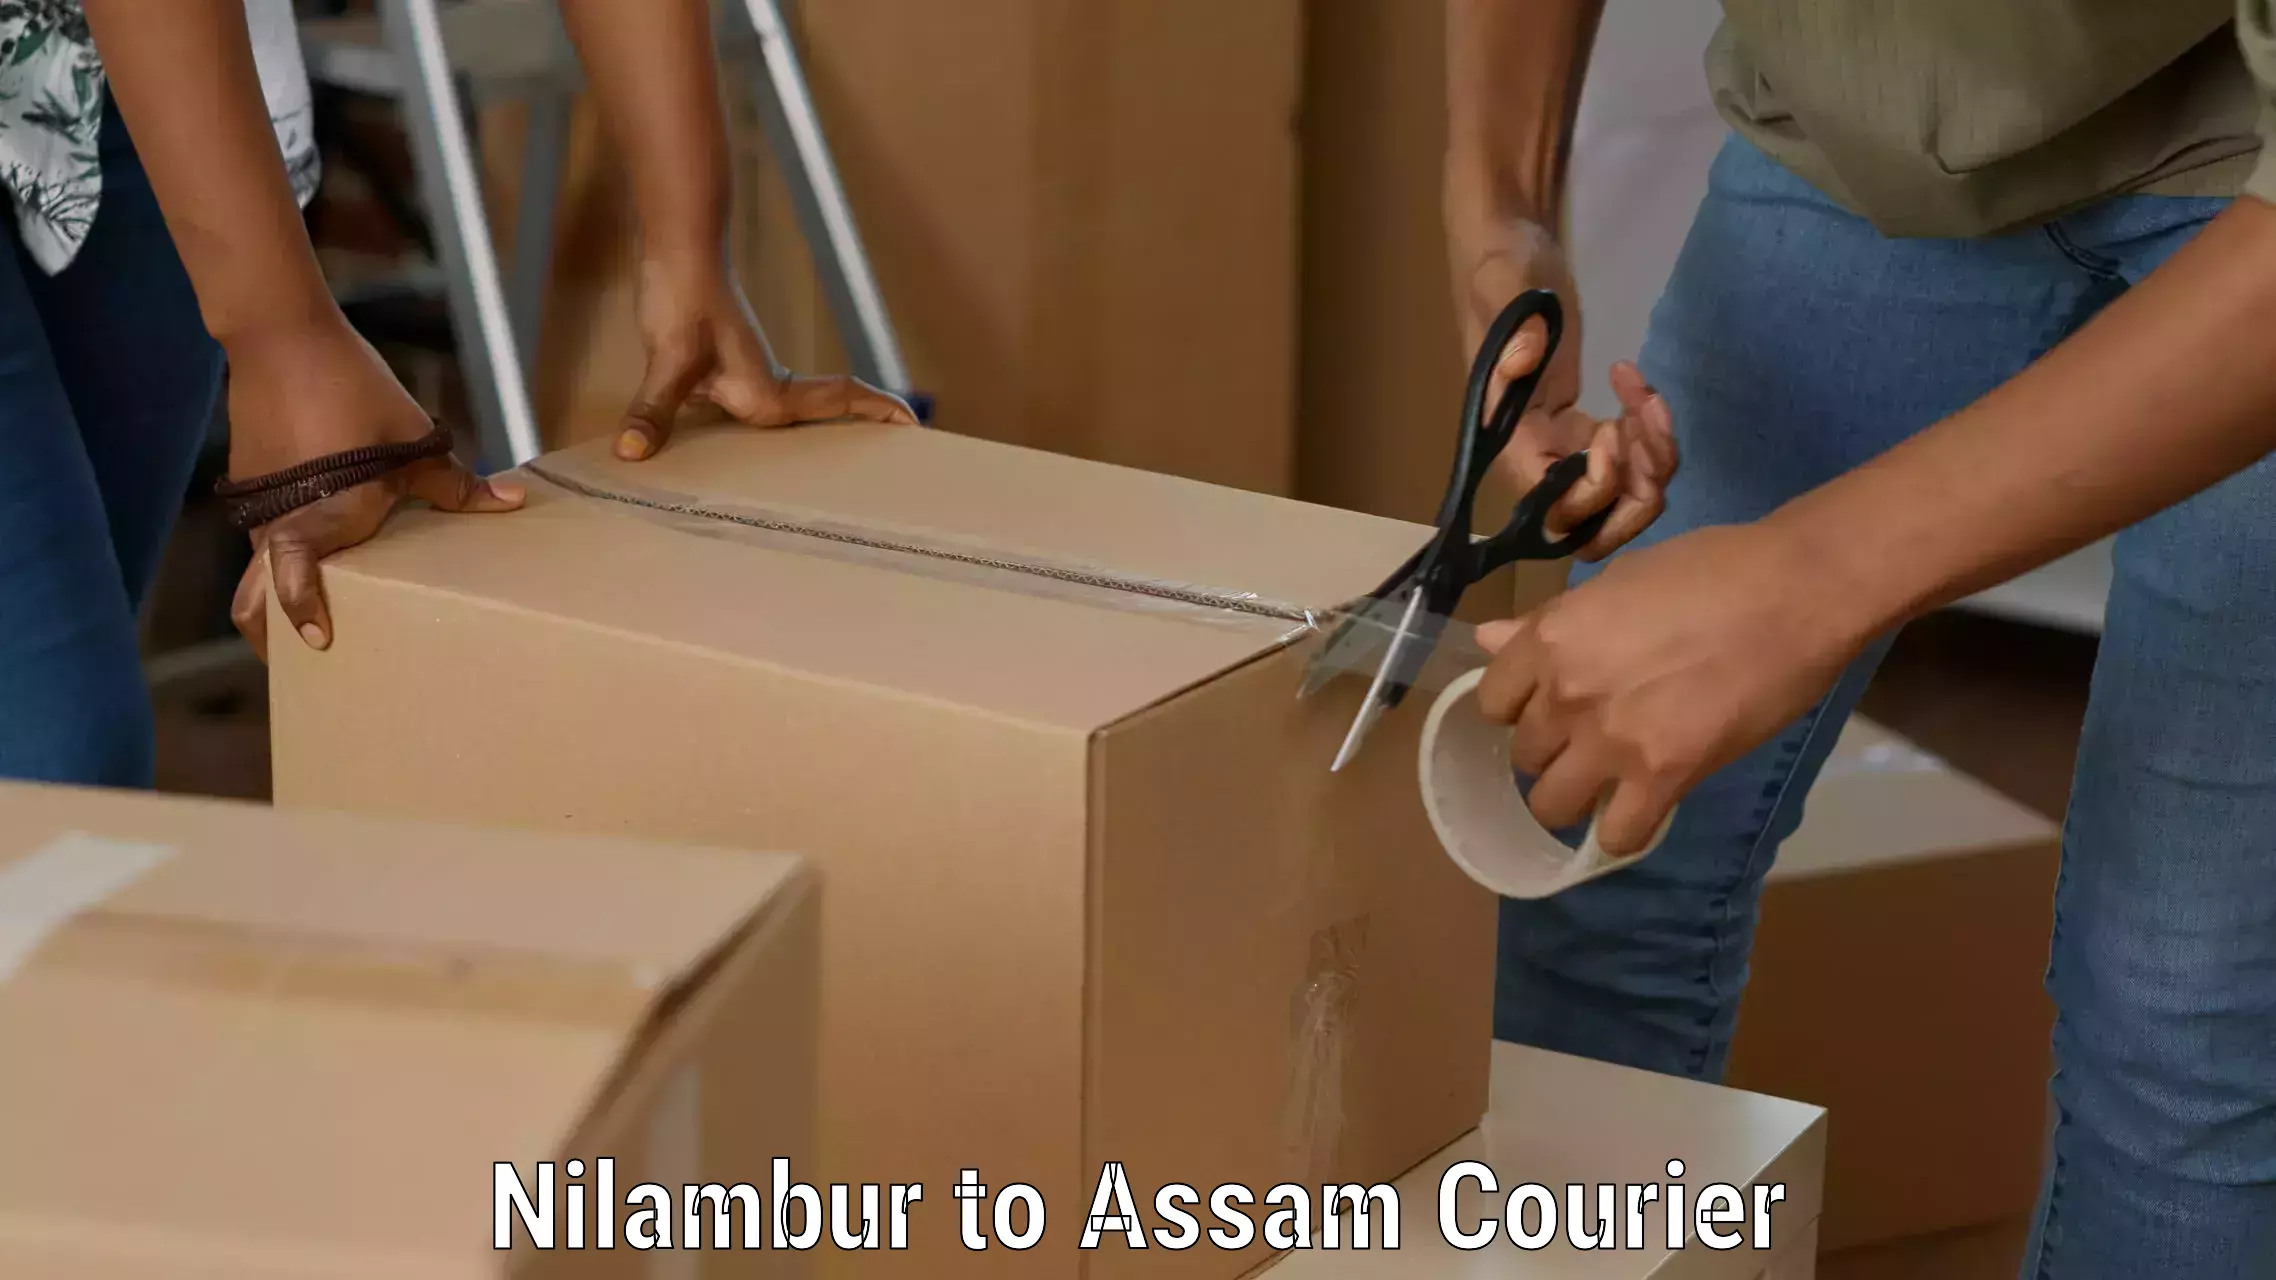 Holiday shipping services Nilambur to Assam